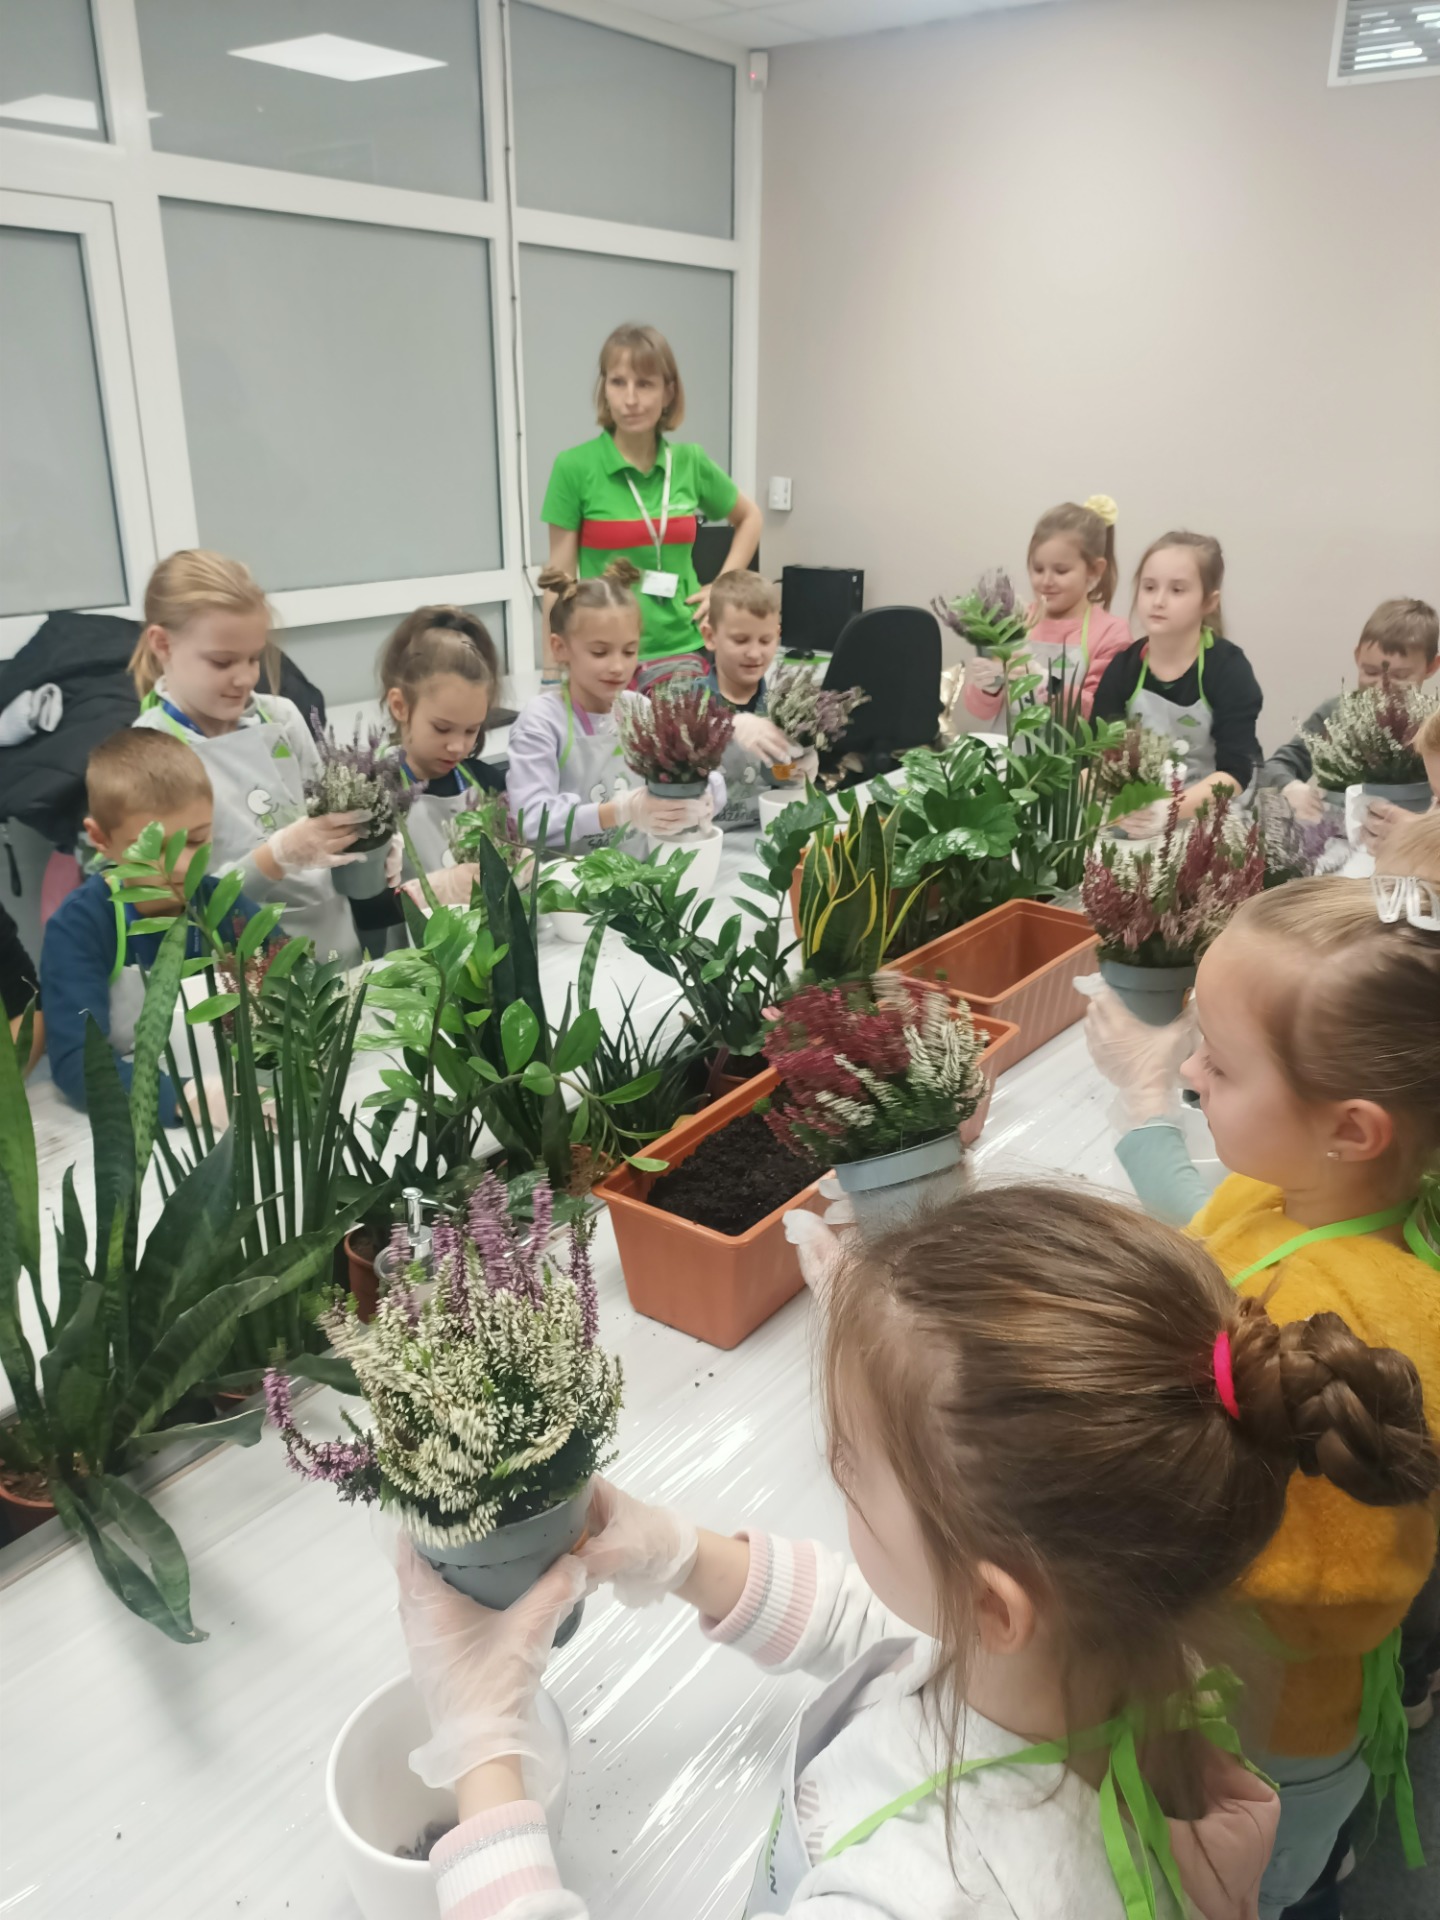 Warsztaty sadzenia kwiatów w ramach programu Leroy Merlin "Dzieciaki Sadzeniaki".